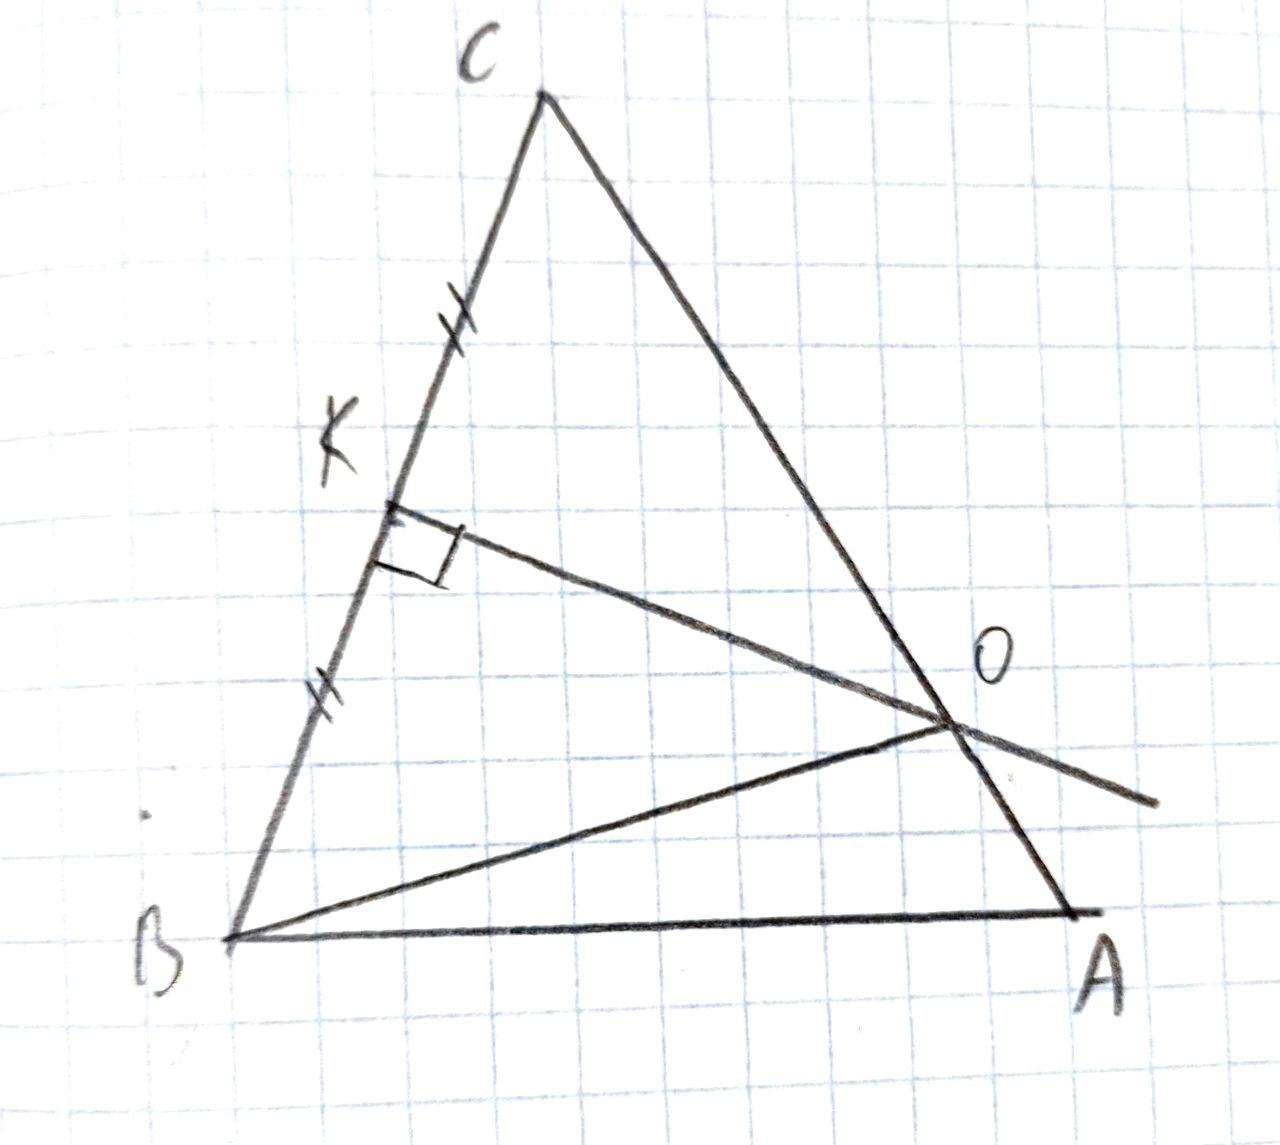 Серединный перпендикуляр стороны АС. Серединный перпендикуляр в прямоугольном треугольнике. Серединные перпендикуляры к сторонам треугольника. Найдите сторону вс треугольника АВС изображенного на рисунке.